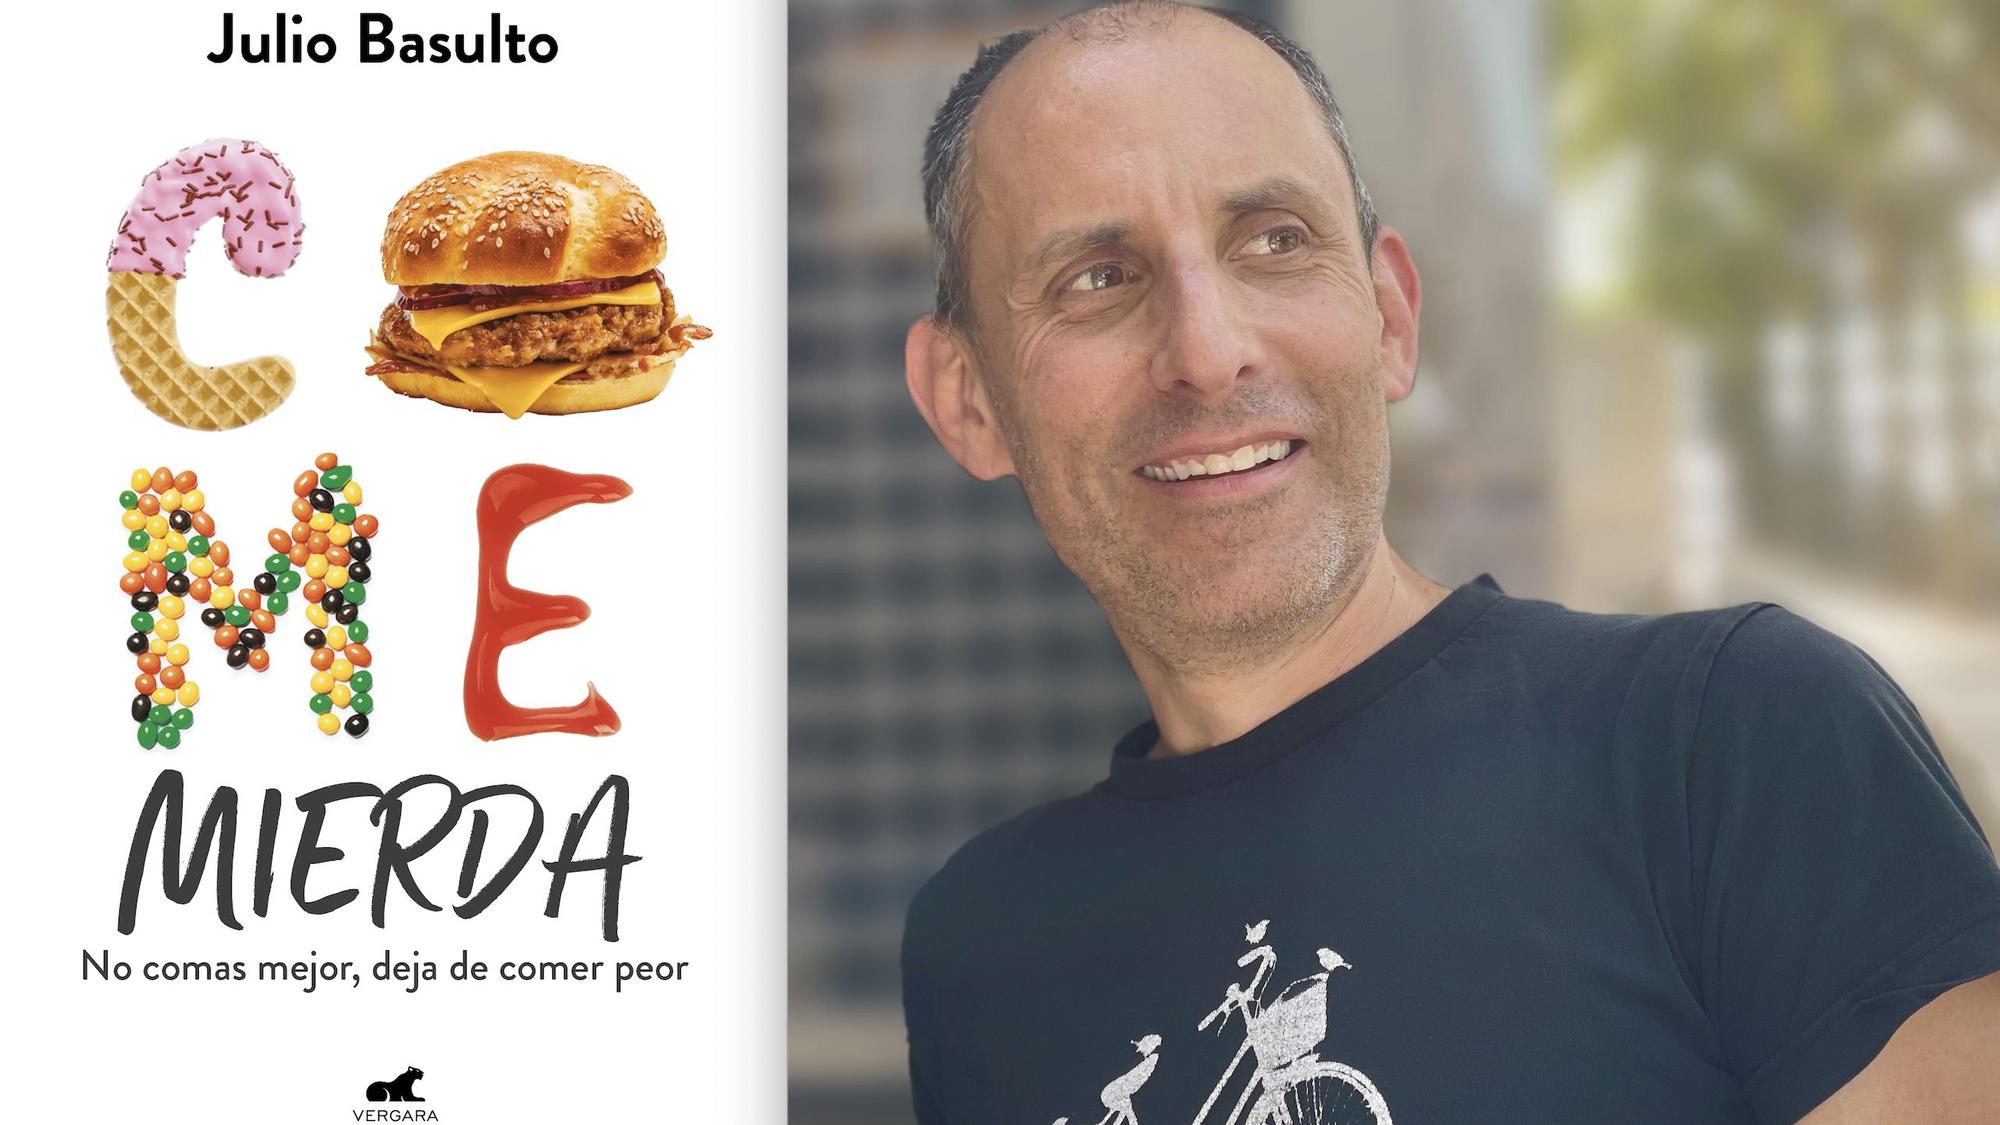 El nutricionista Julio Basulto acaba de publicar el libro 'Come mierda'.